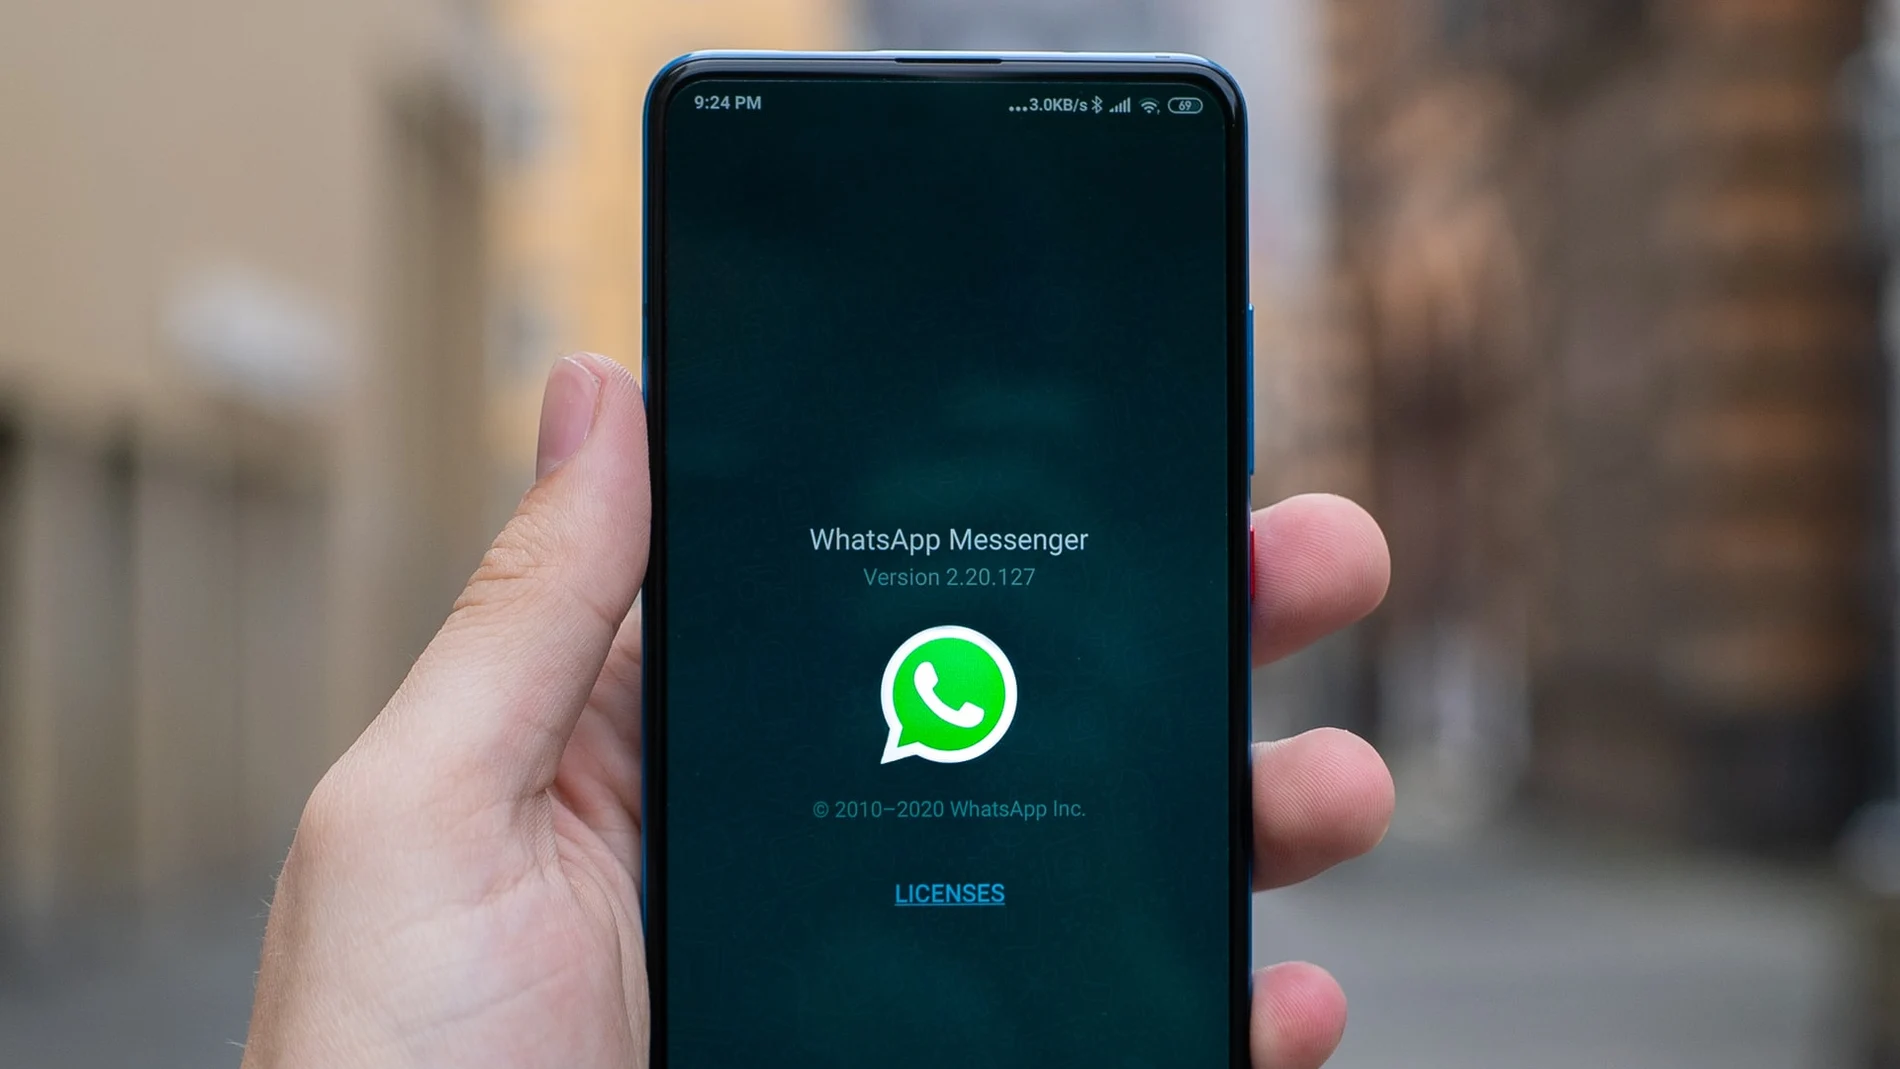 WhatsApp oculta atajos para tareas habituales. Así los descubres.